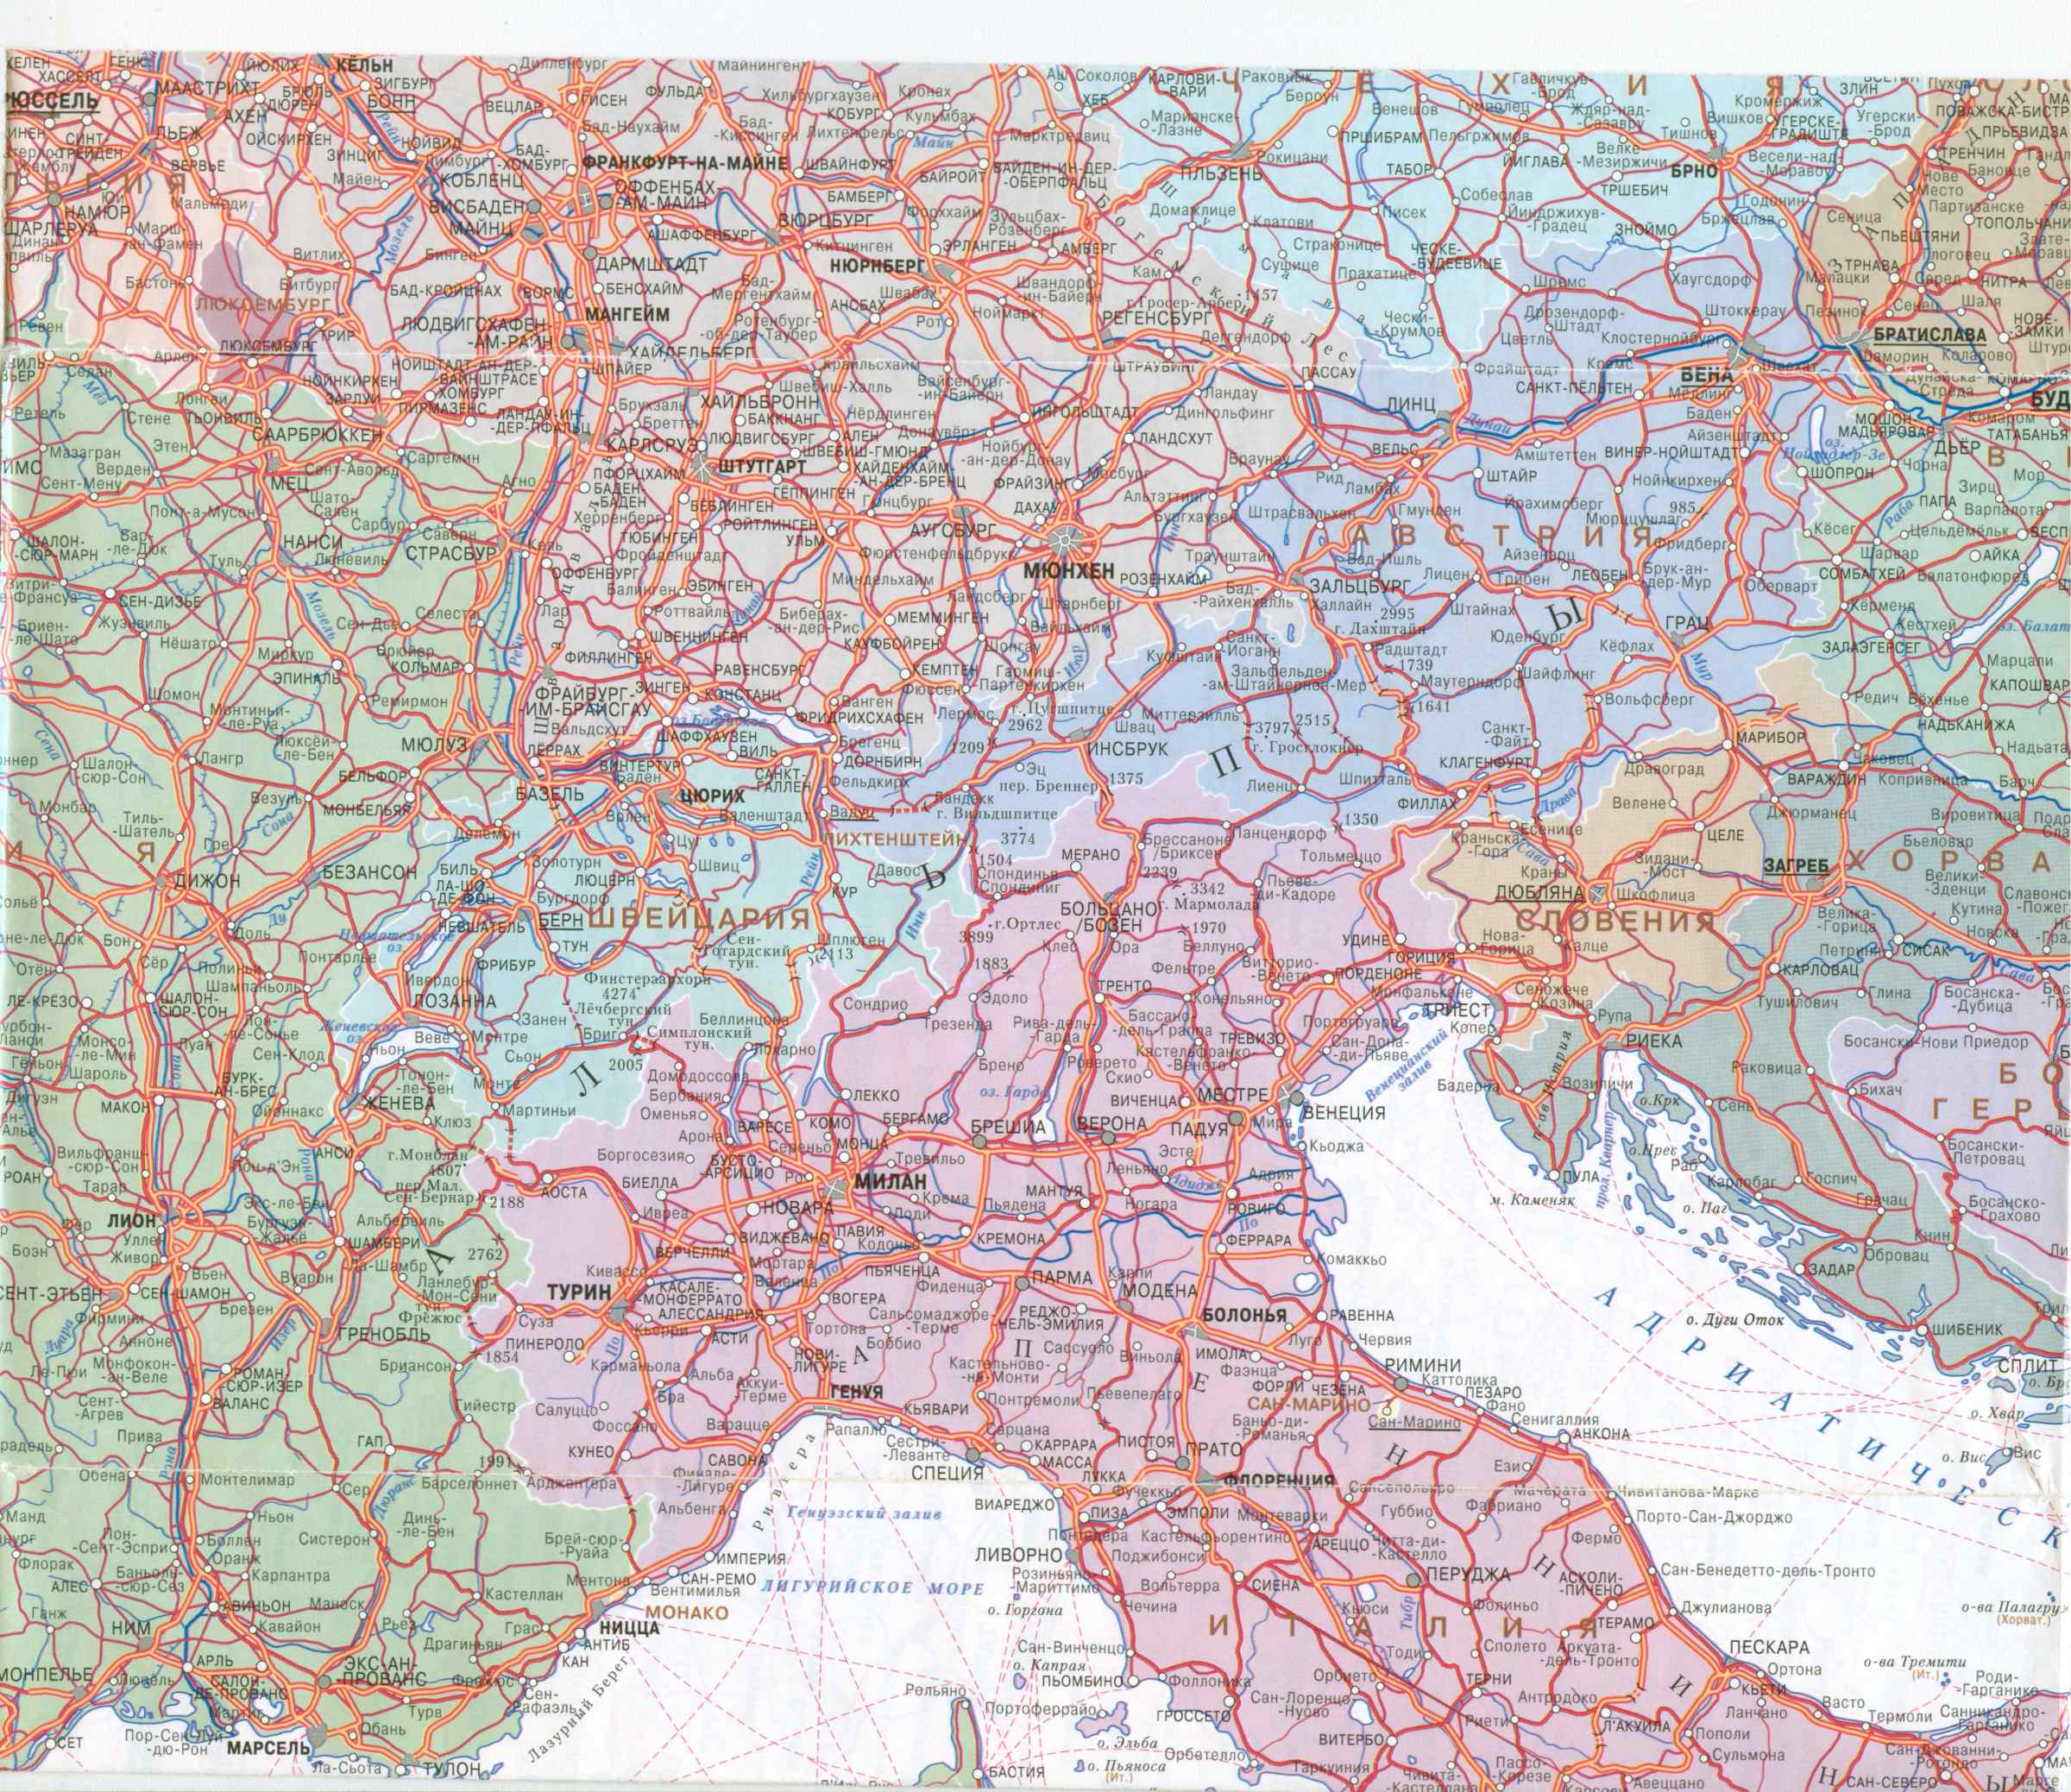  Карта автодорог Европы 1см:45км. Большая подробная карта автодорог Европы на русском языке, B3 - 